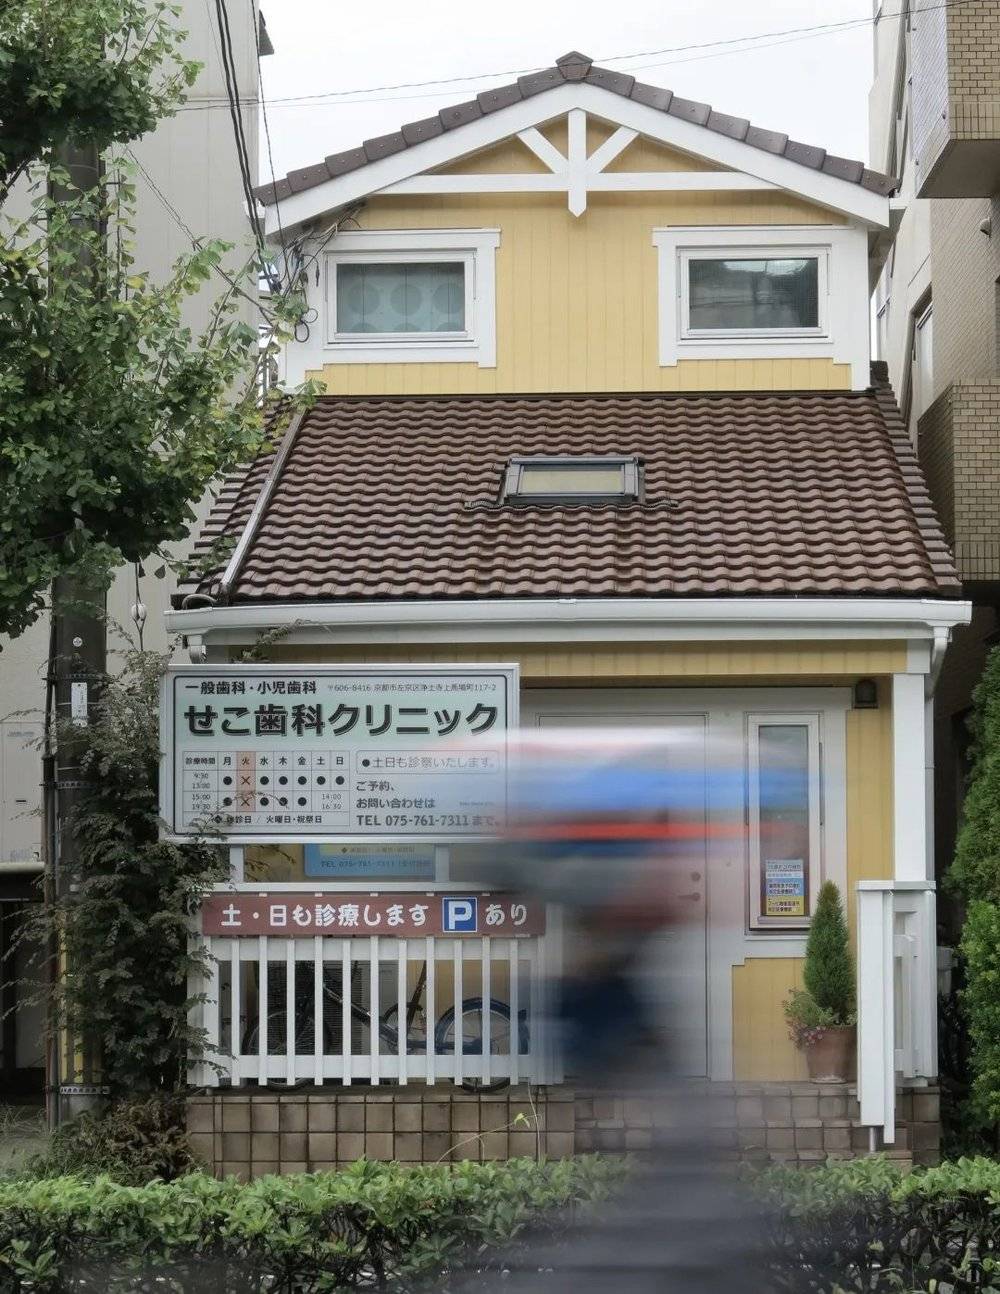 日本全国的牙科诊疗所比便利店要多出1万多家<br>